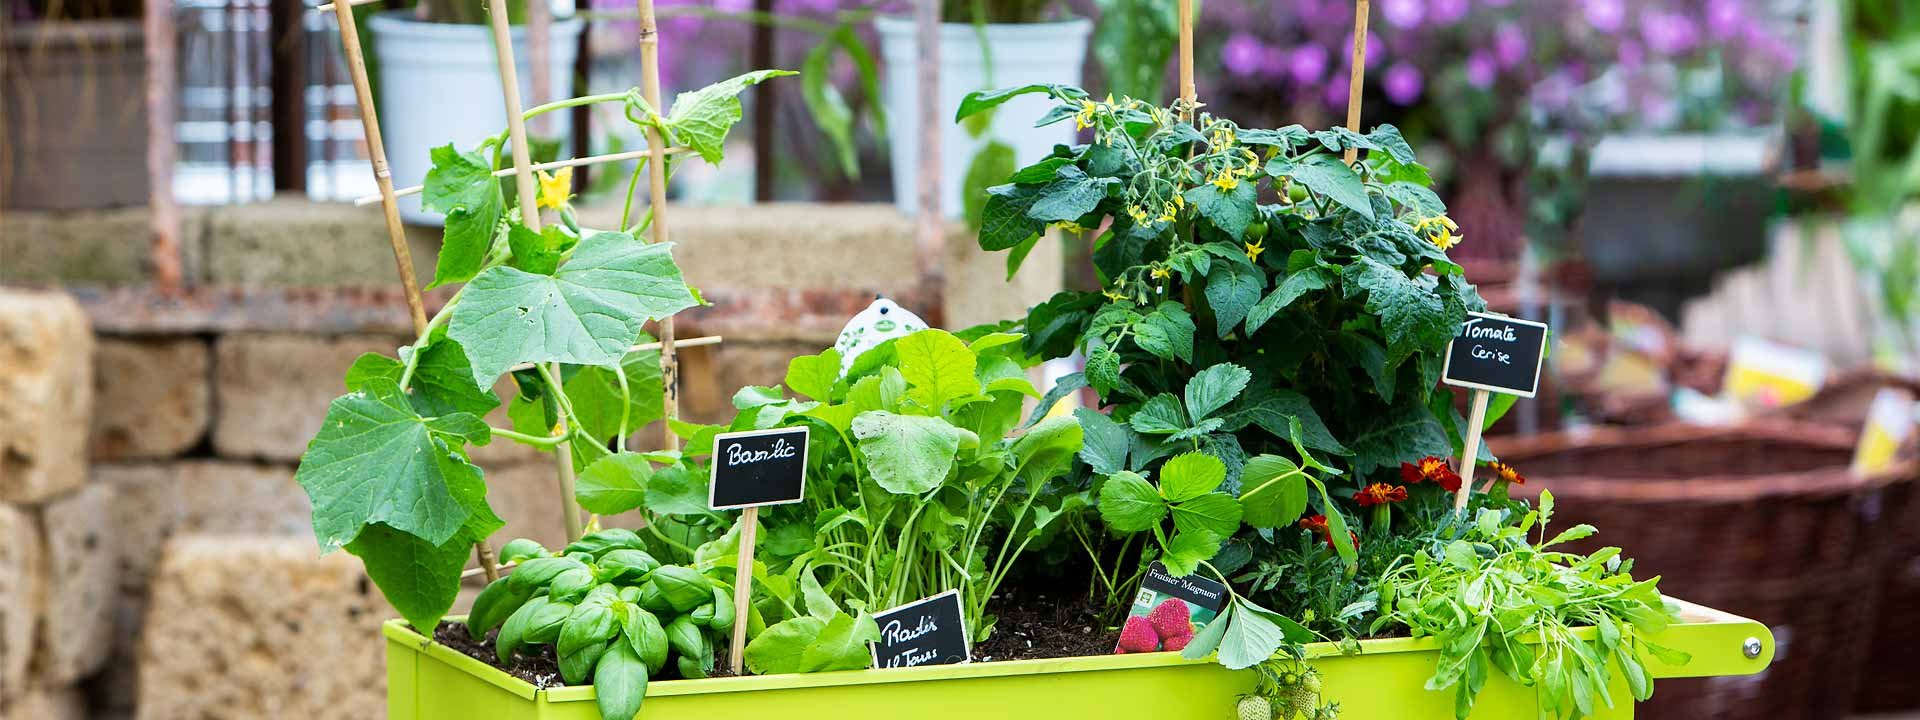 Décor saisonnier, créez un jardin de pots - Gamm vert